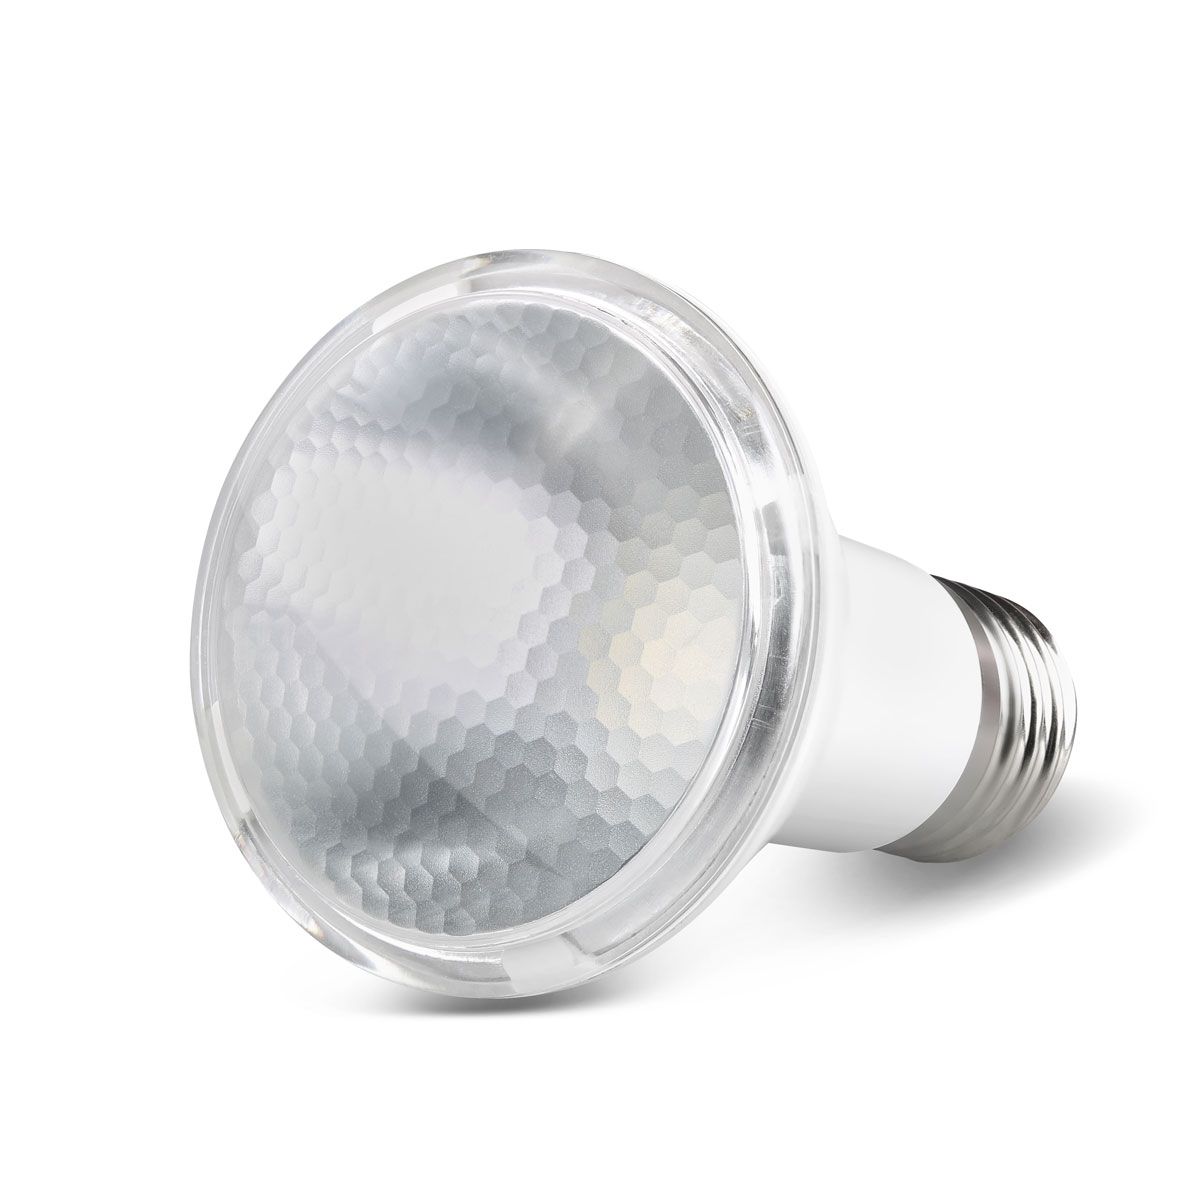 12x Lampada PAR 20 7W Luz Neutra 4000K Bivolt Save Energy